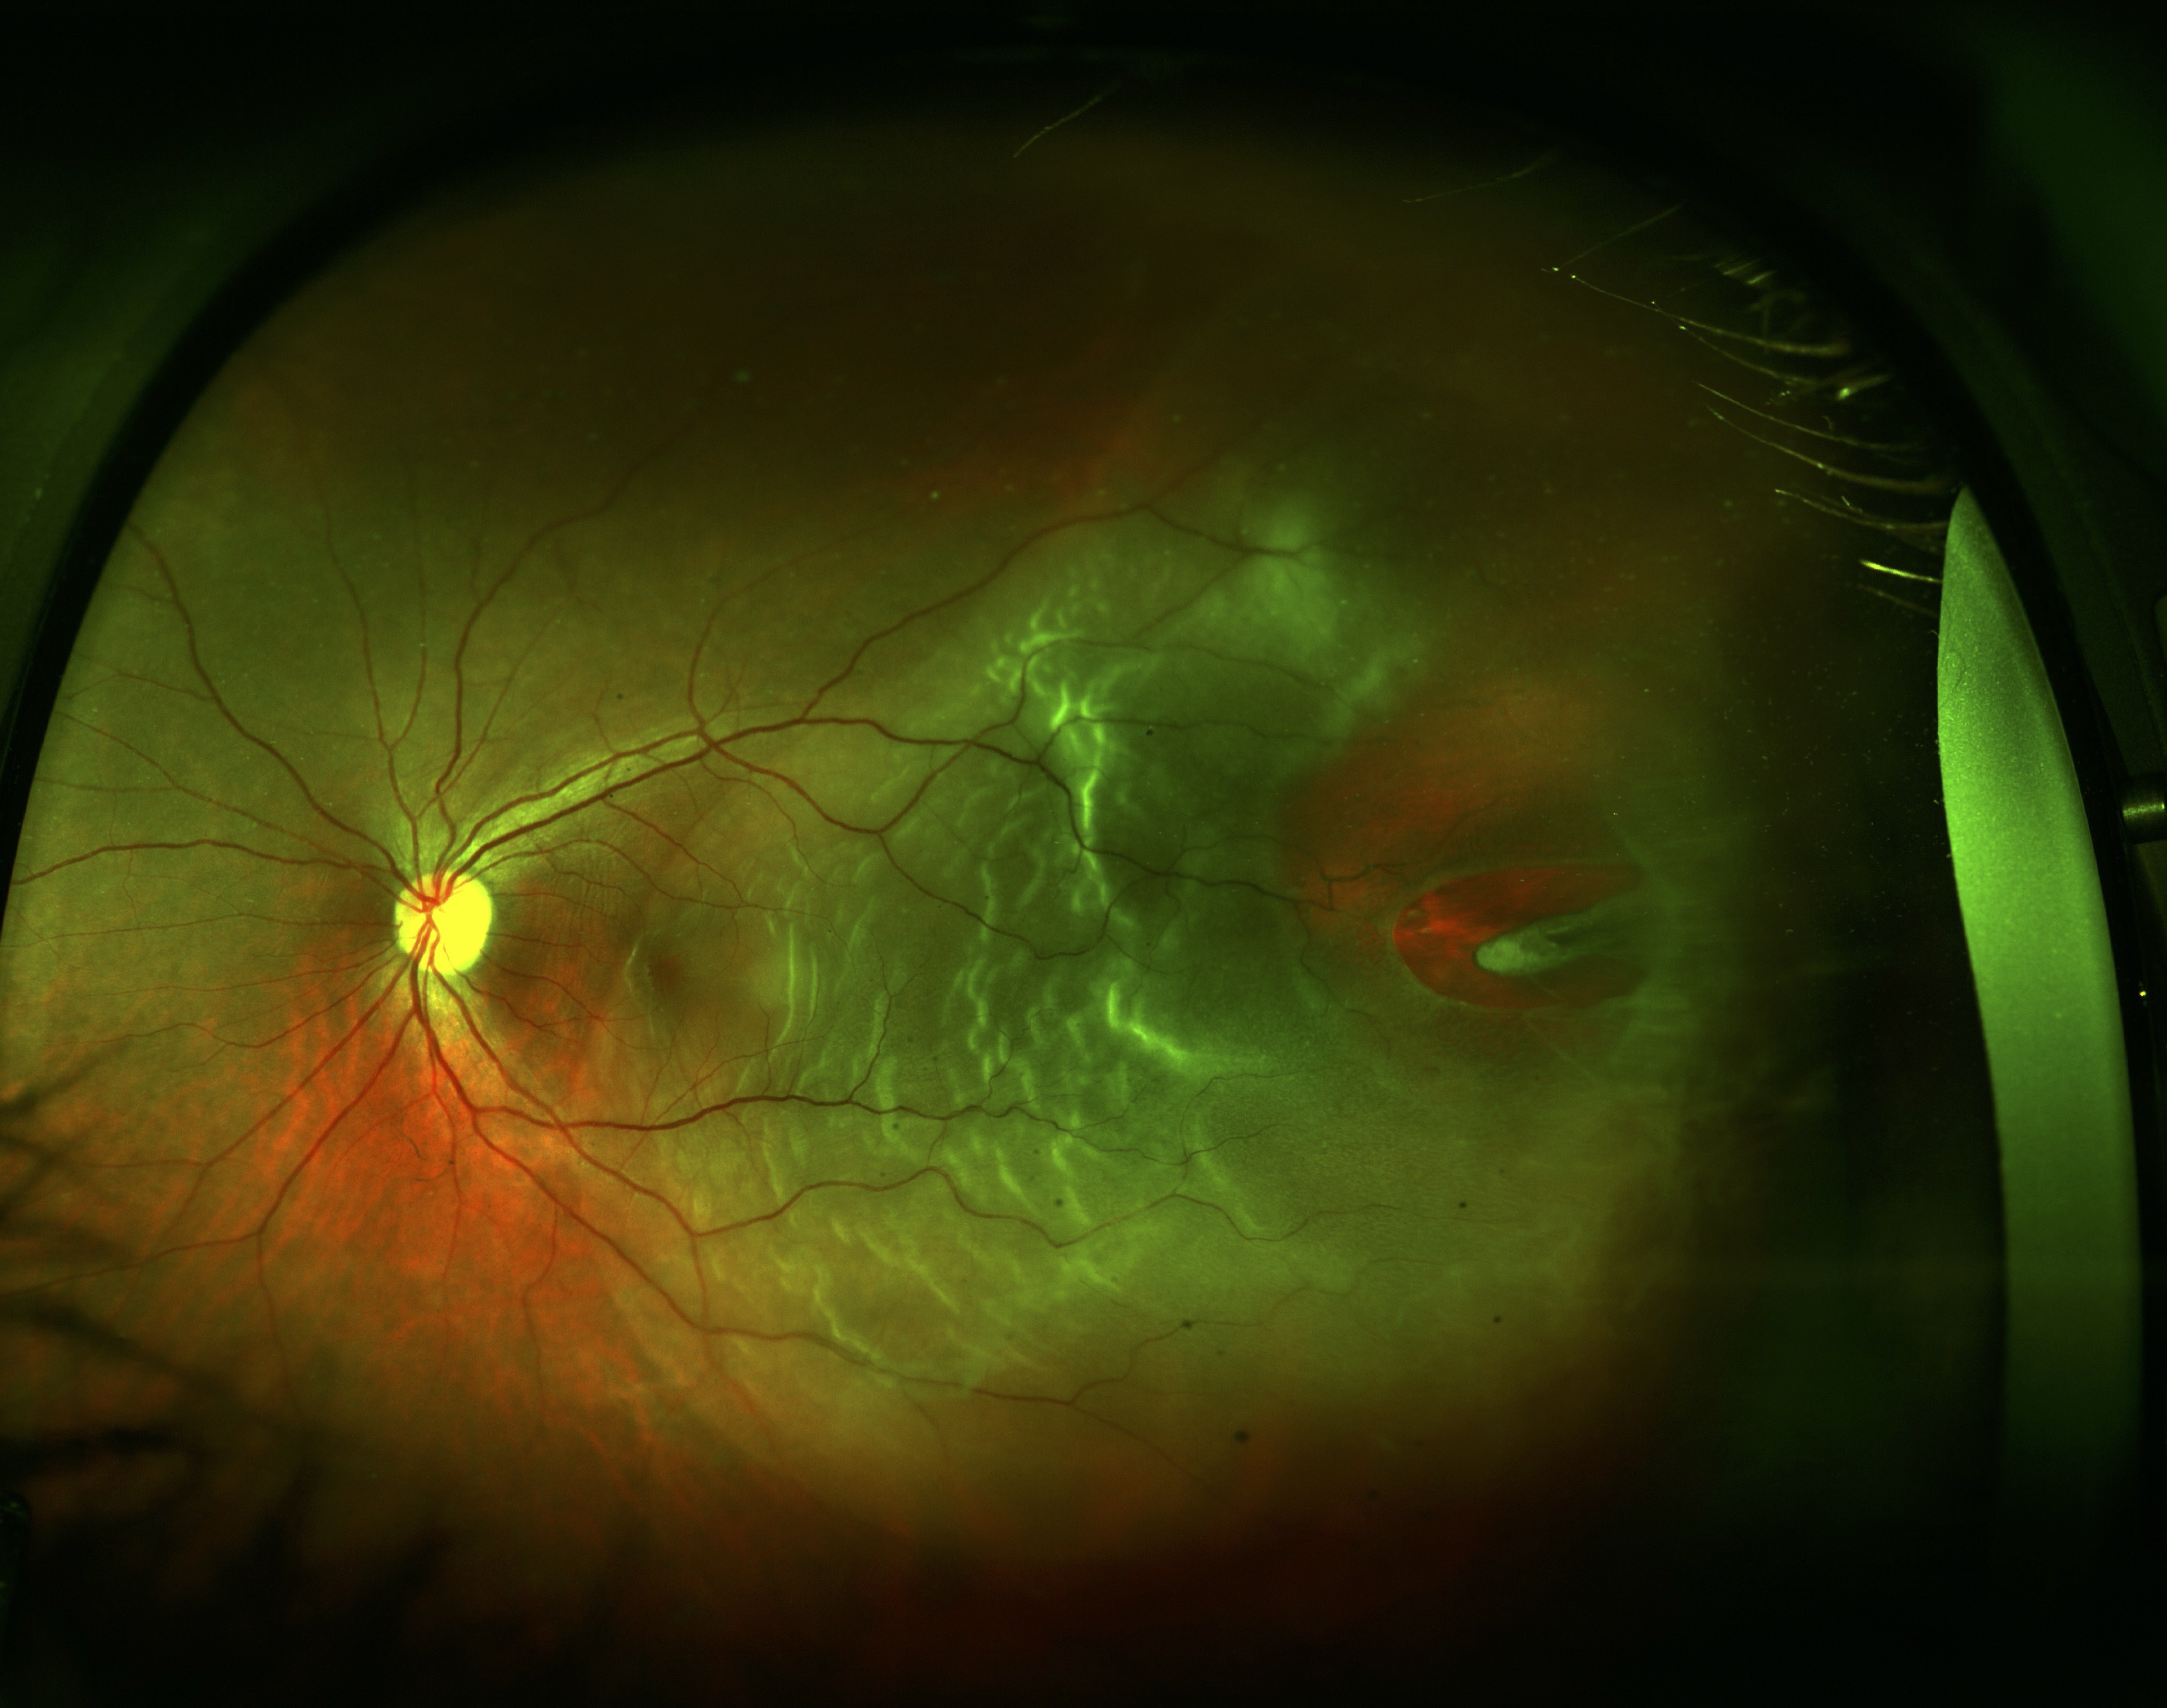 Figure 10.1.1 Total Retinal Detachment